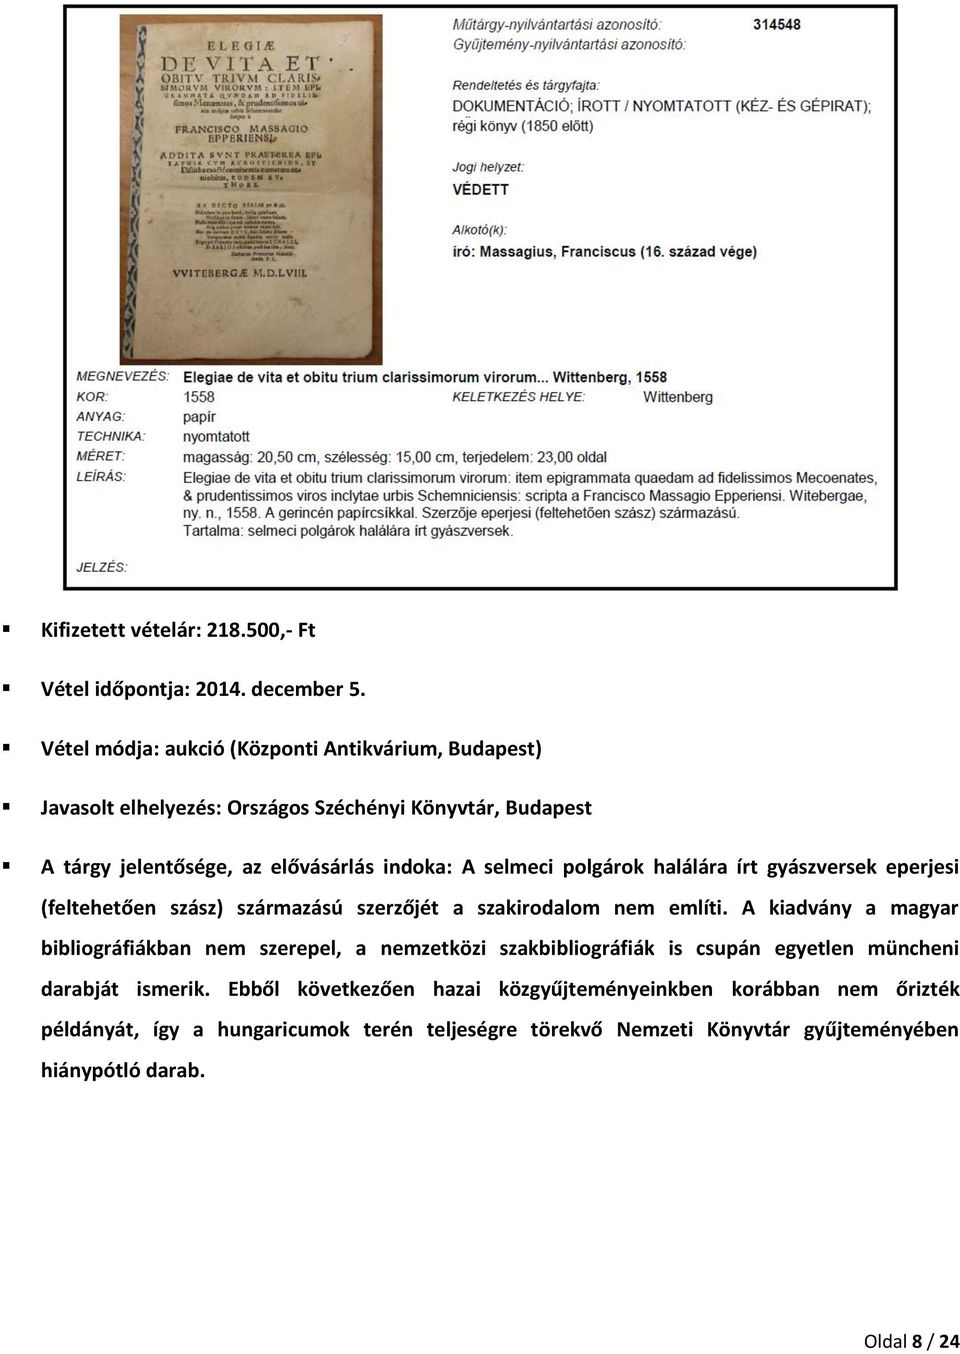 selmeci polgárok halálára írt gyászversek eperjesi (feltehetően szász) származású szerzőjét a szakirodalom nem említi.